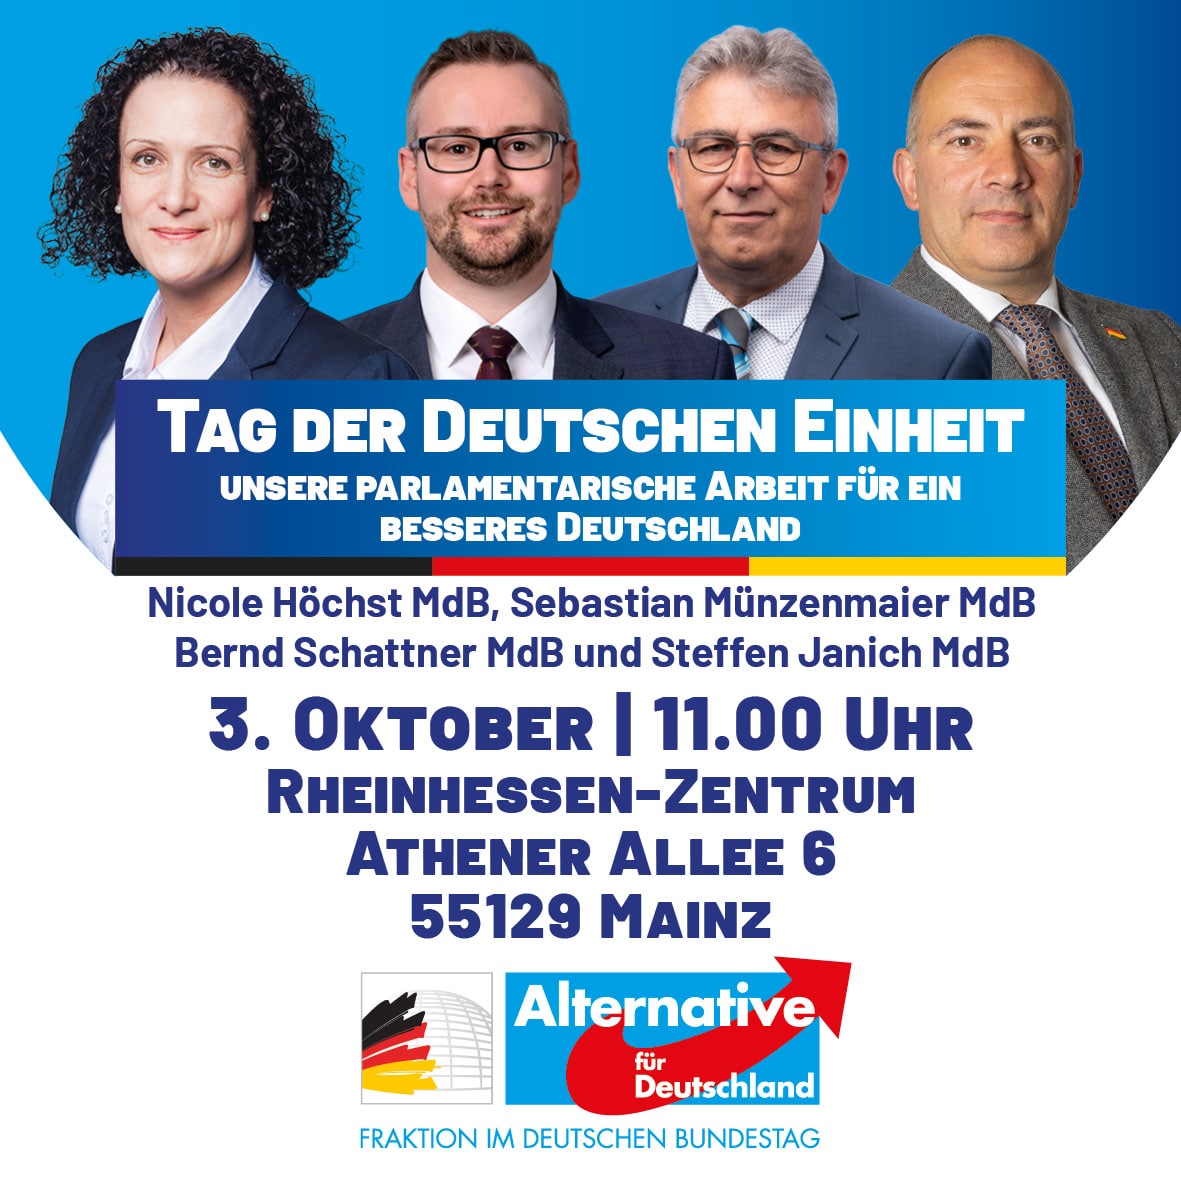 Tag der Deutschen Einheit: Veranstaltung im Zentrum Rheinhessen